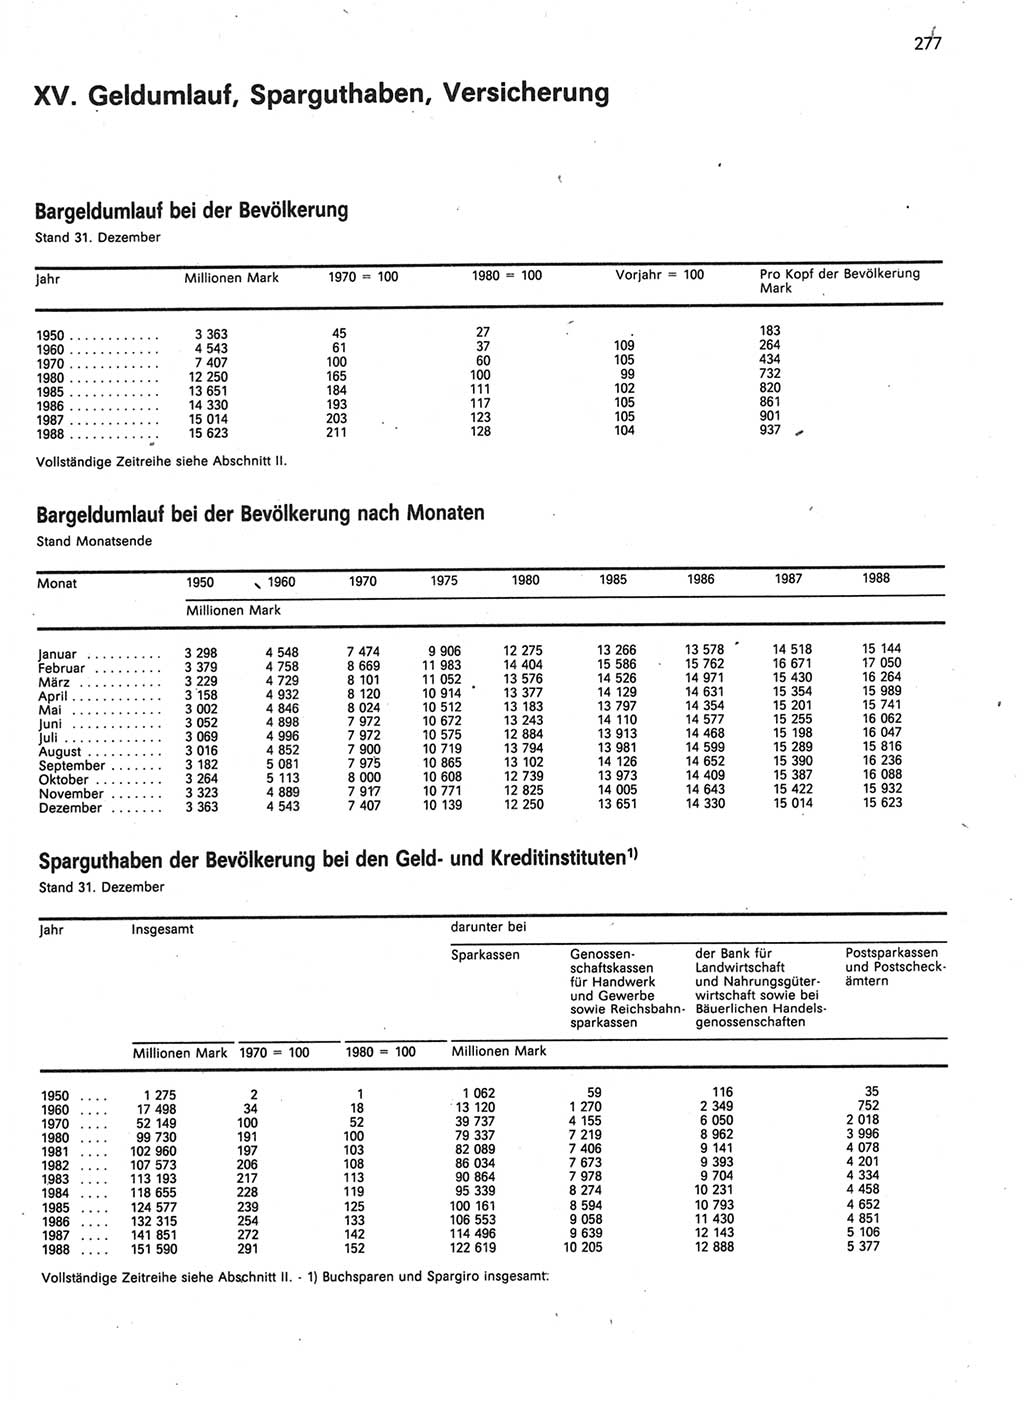 Statistisches Jahrbuch der Deutschen Demokratischen Republik (DDR) 1989, Seite 277 (Stat. Jb. DDR 1989, S. 277)